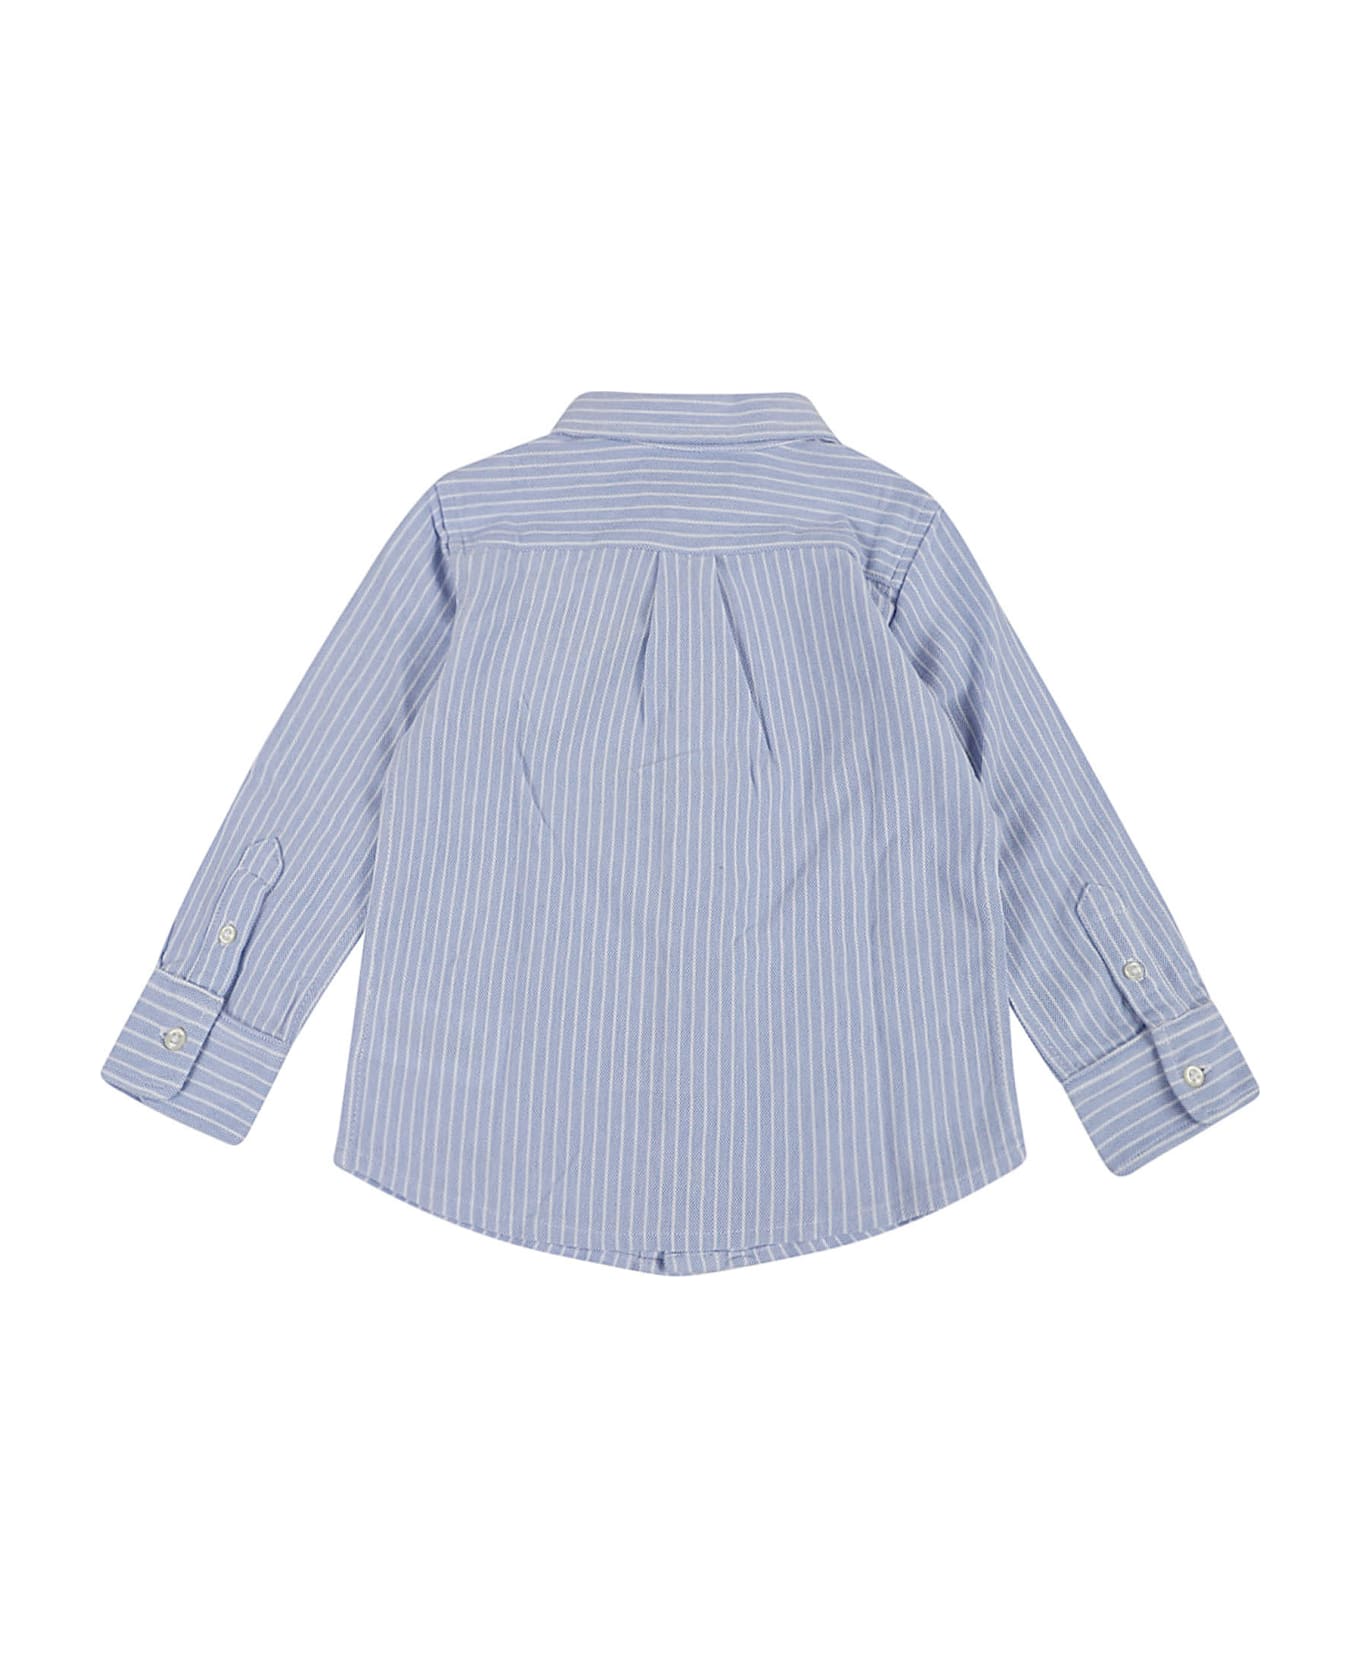 Ralph Lauren Ls Fb Bd Clr-shirts-sport Shirt - Dress Shirt Blue White